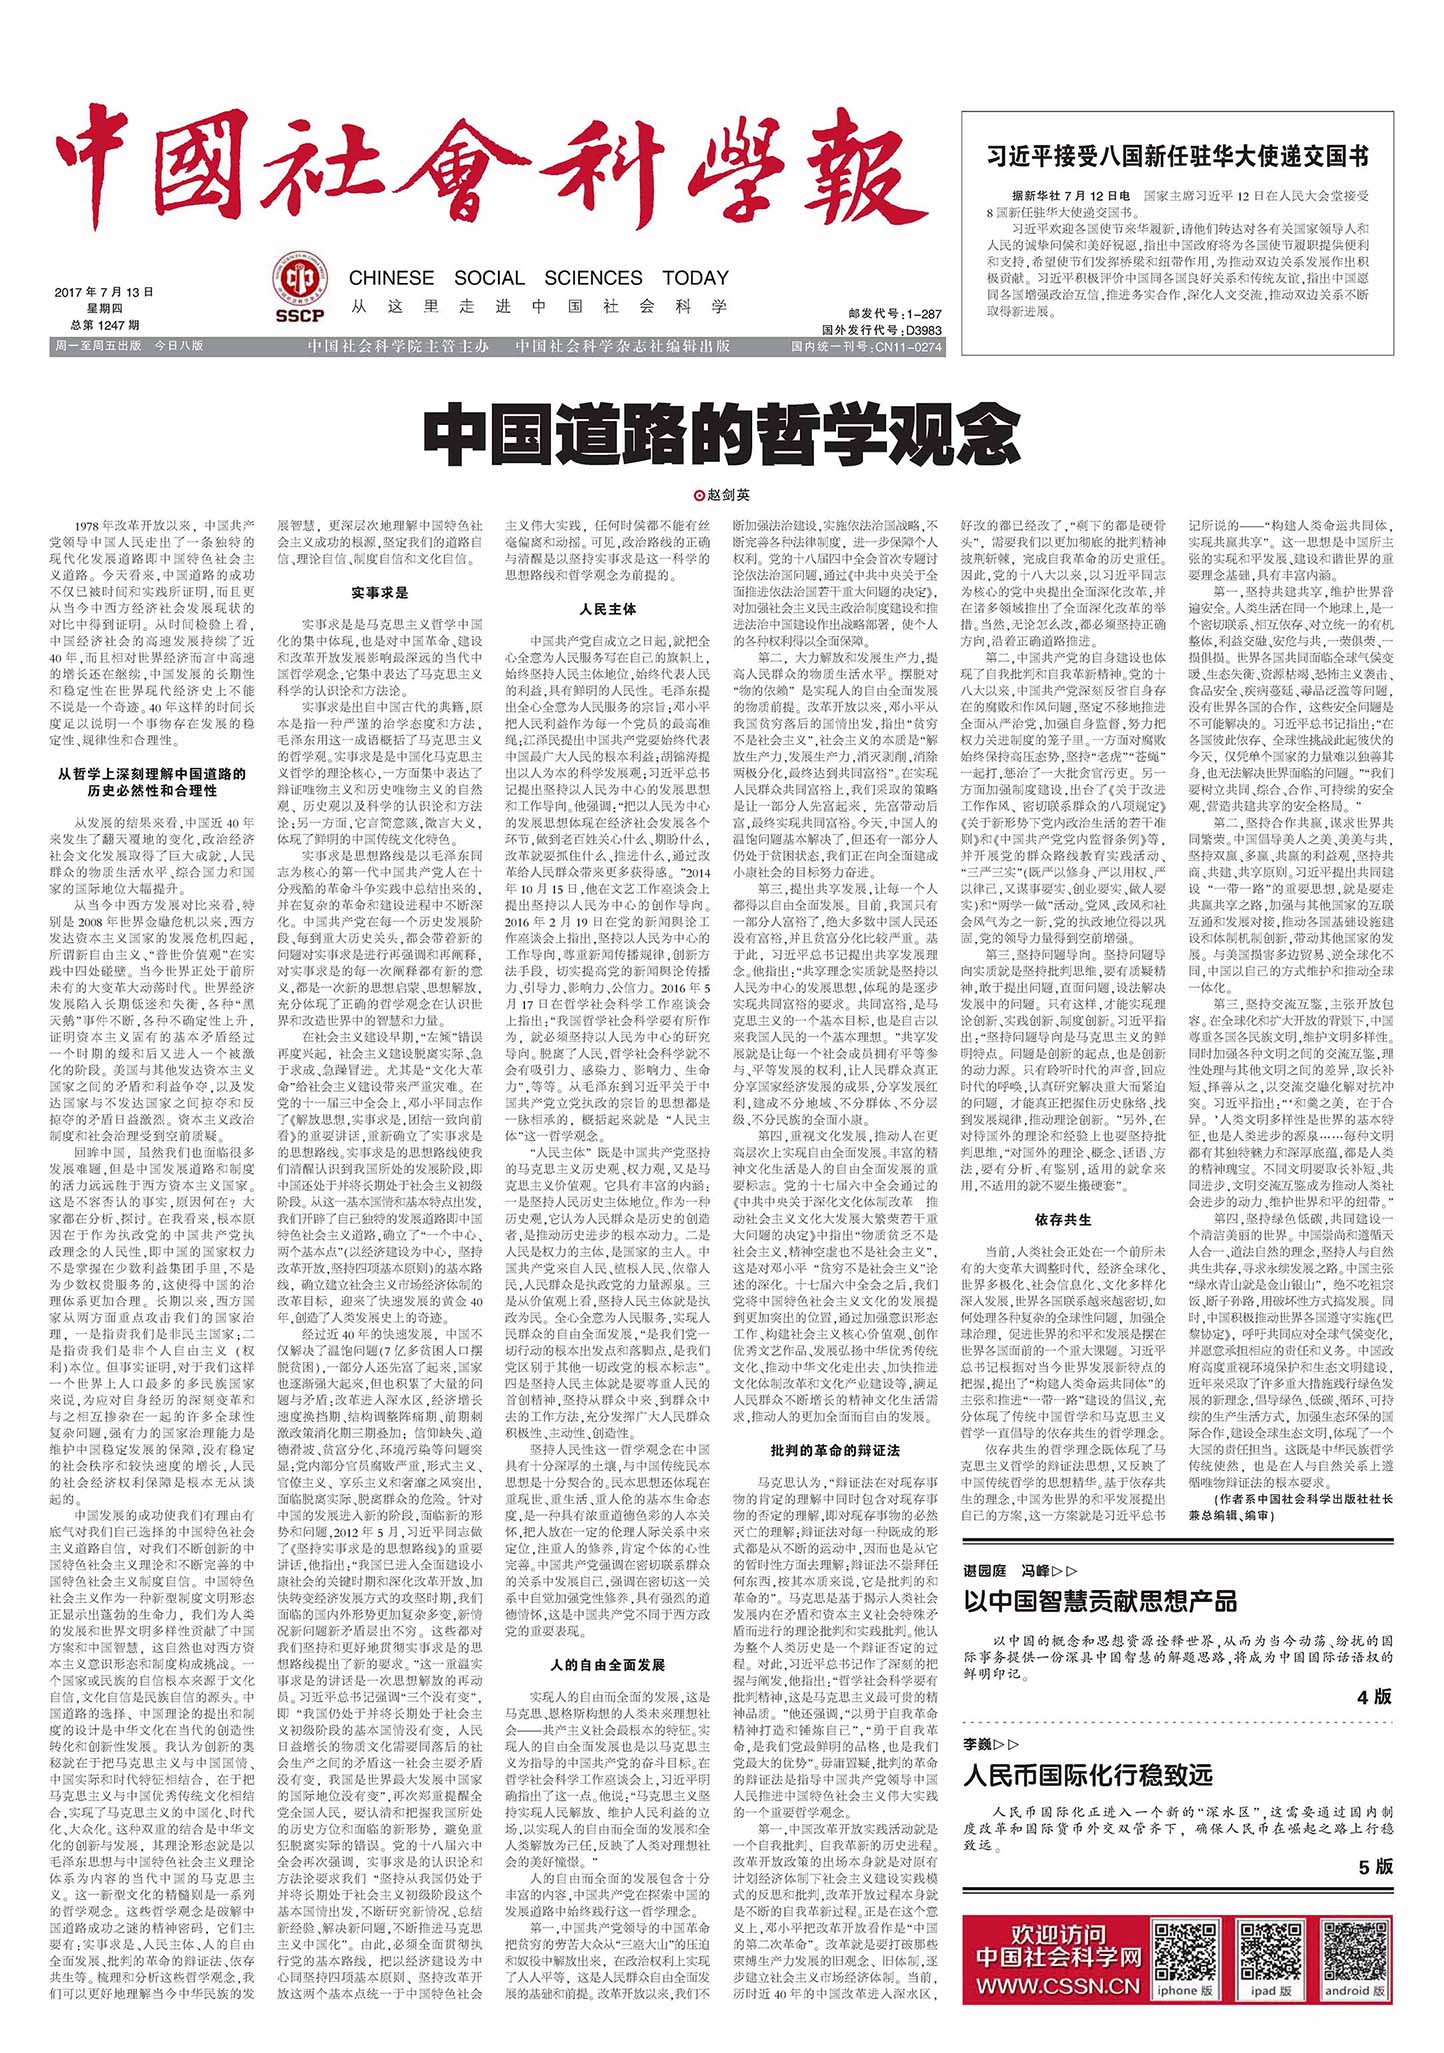 中国社会科学报头版报道截图